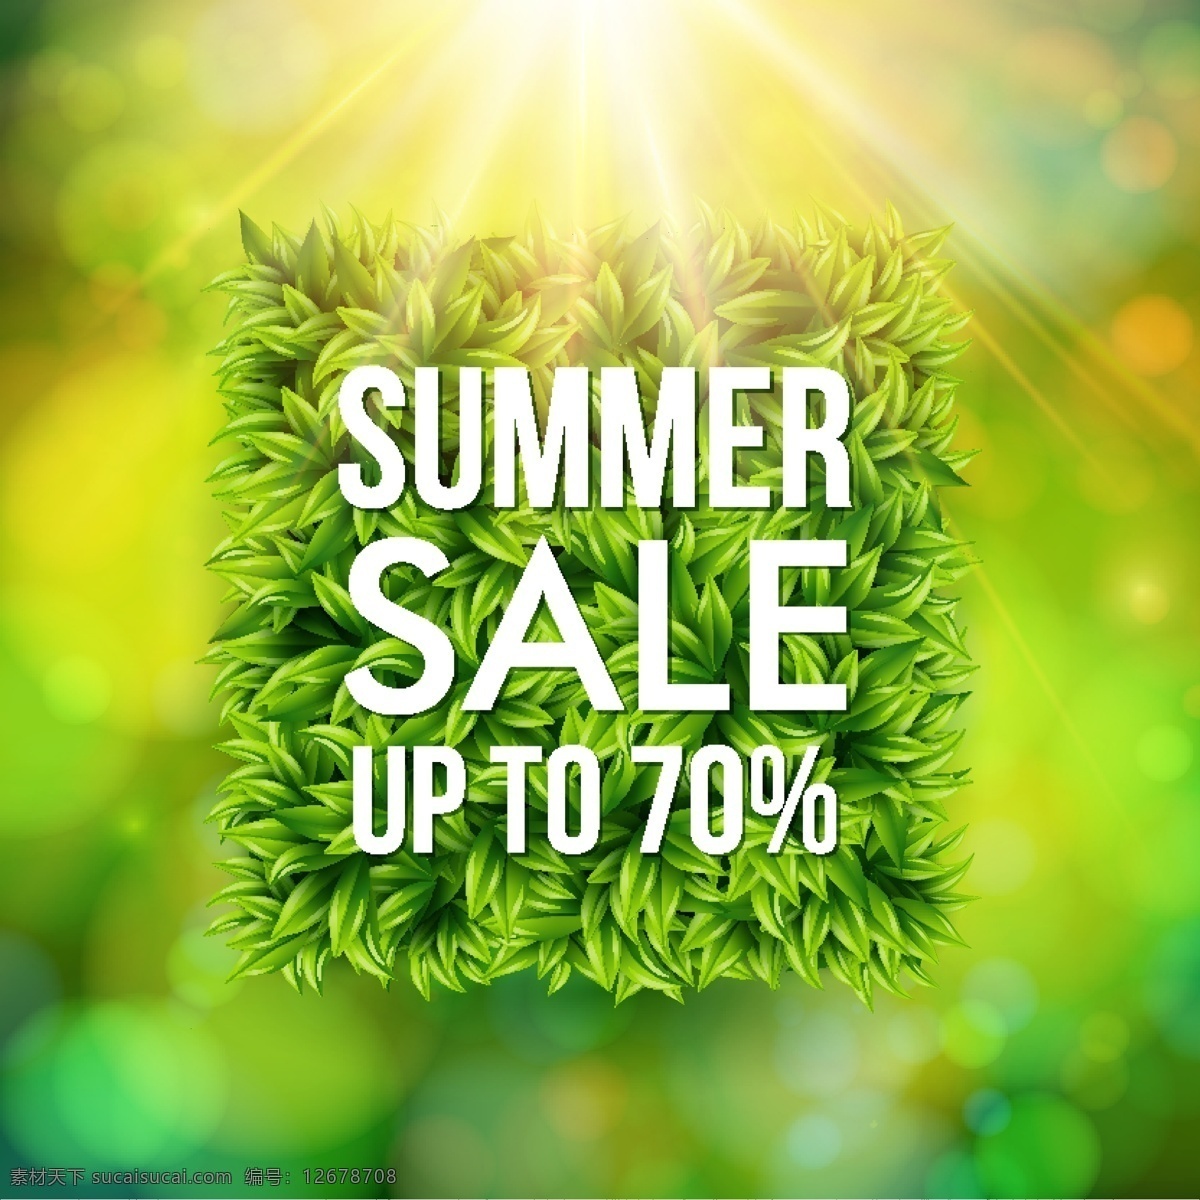 夏季 折扣 海报 eps格式 背景 促销 矢量图 树叶 销售 阳光 叶子 矢量 其他矢量图